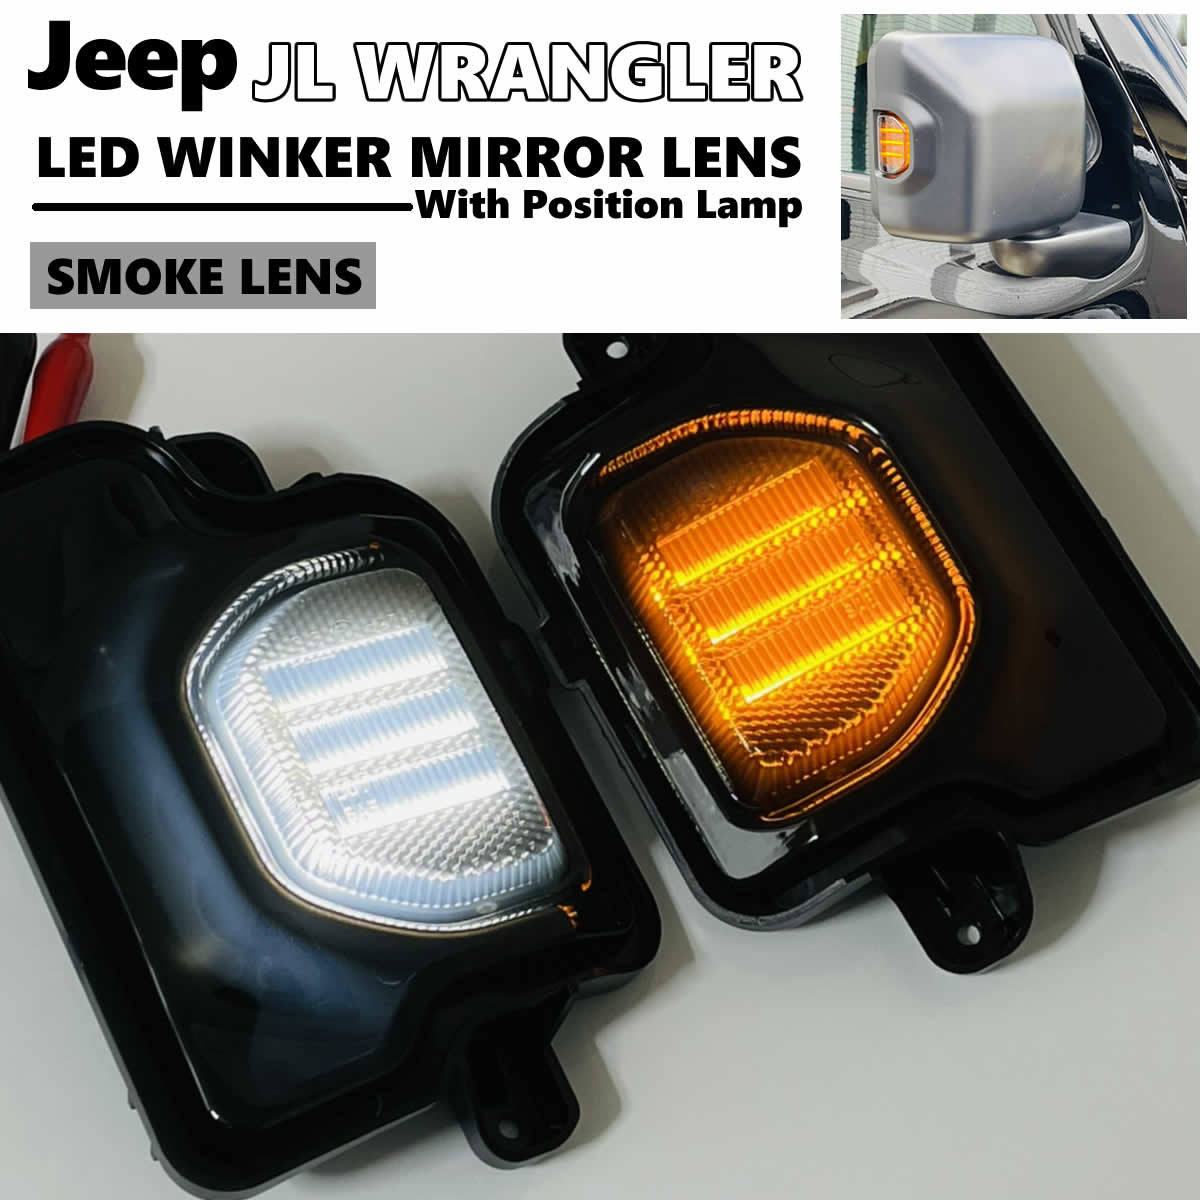 送料込 JEEP ラングラー JL ポジション付 LED ウインカー ミラー レンズ スモークレンズ 交換式 ドアミラー 在庫あり! ジープ Wranglerの画像1